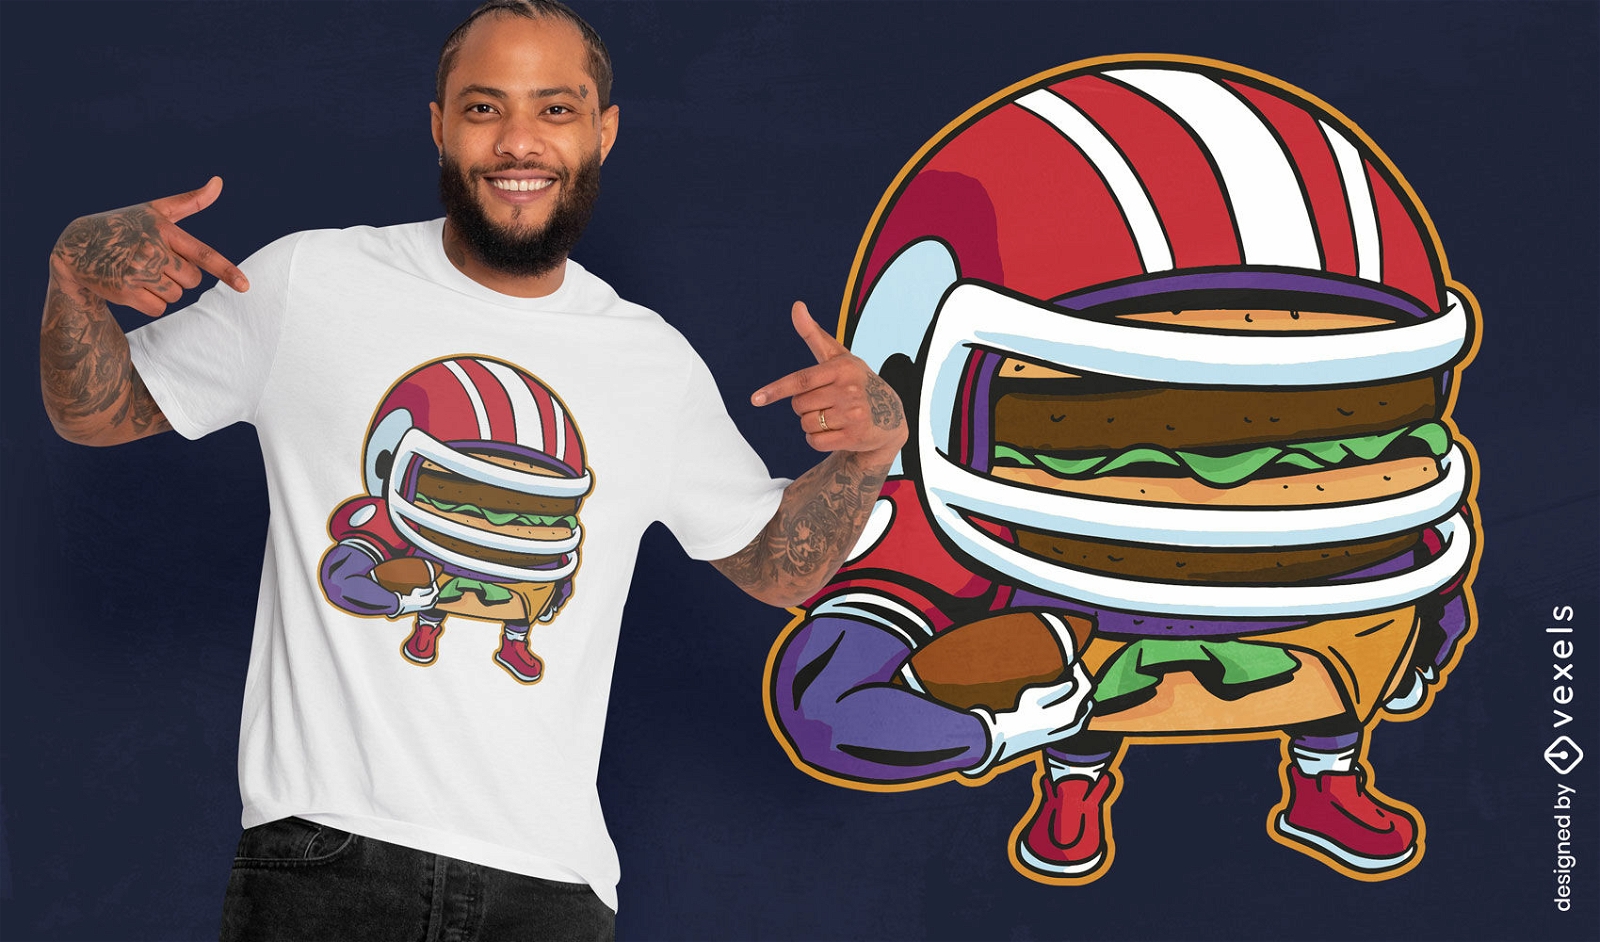 Dise?o de camiseta de f?tbol de hamburguesa.